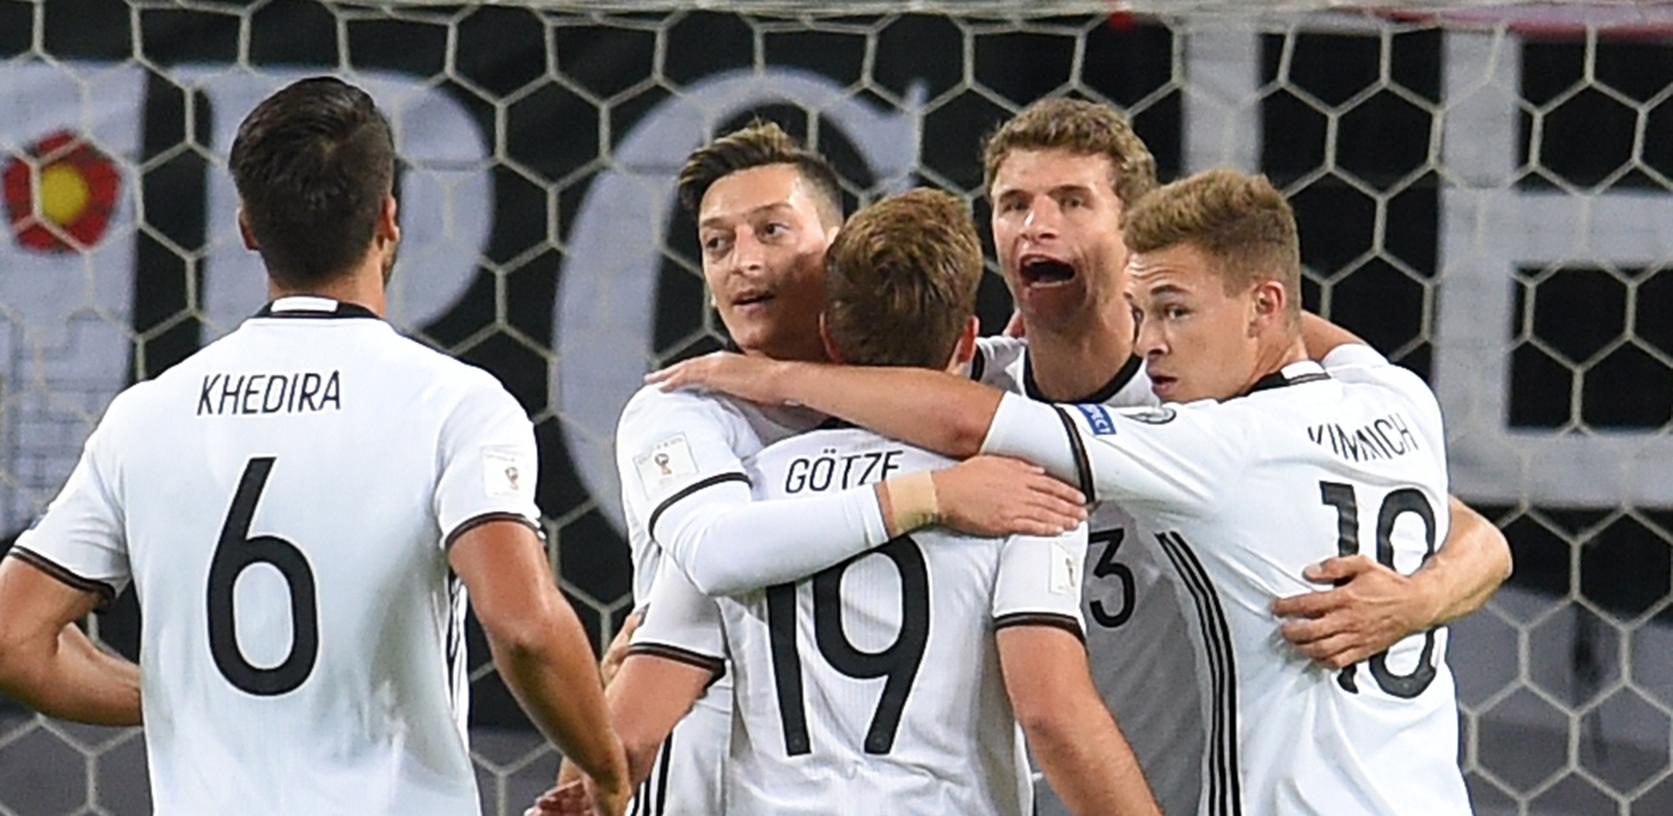 Hochverdienter Erfolg in Hamburg: Das DFB-Team schlug Tschechien locker mit 3:0.